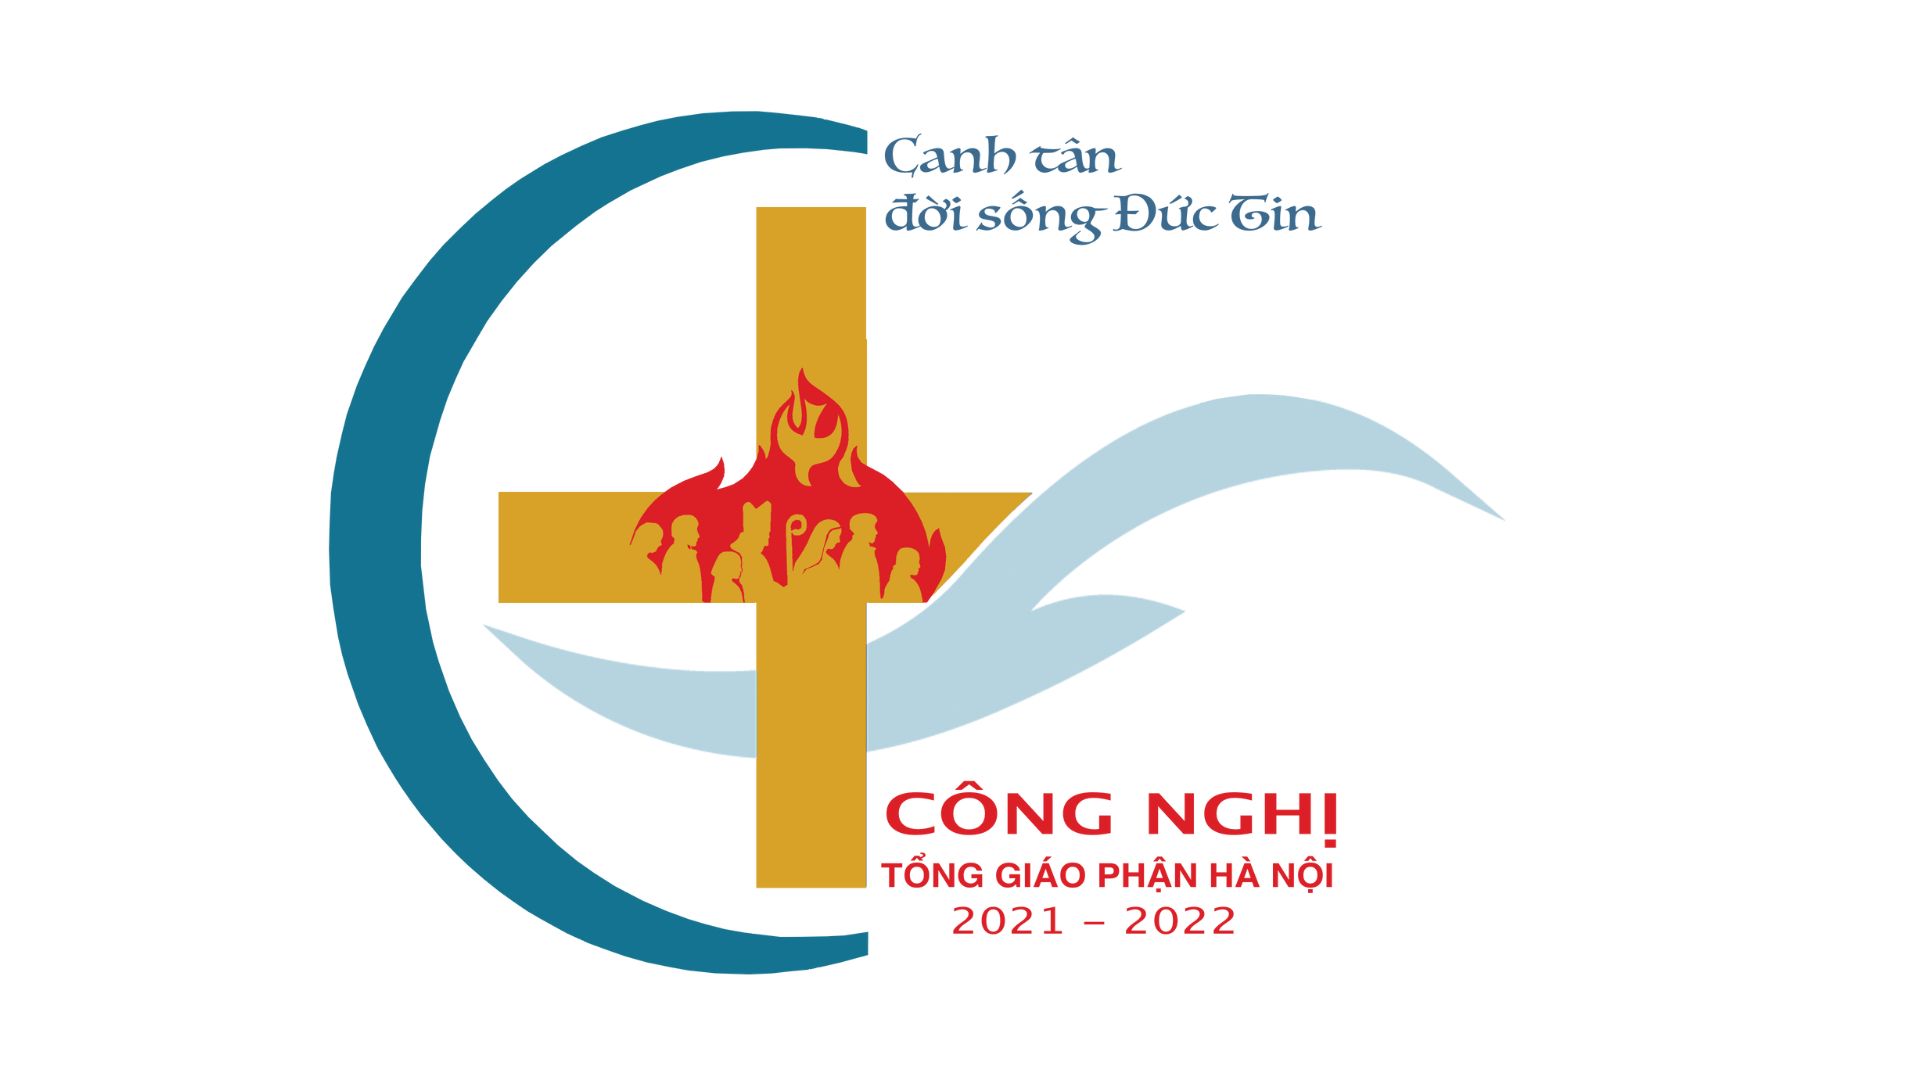 Công nghị Tổng Giáo phận Hà Nội 2022: “Canh Tân Đời Sống Đức Tin”